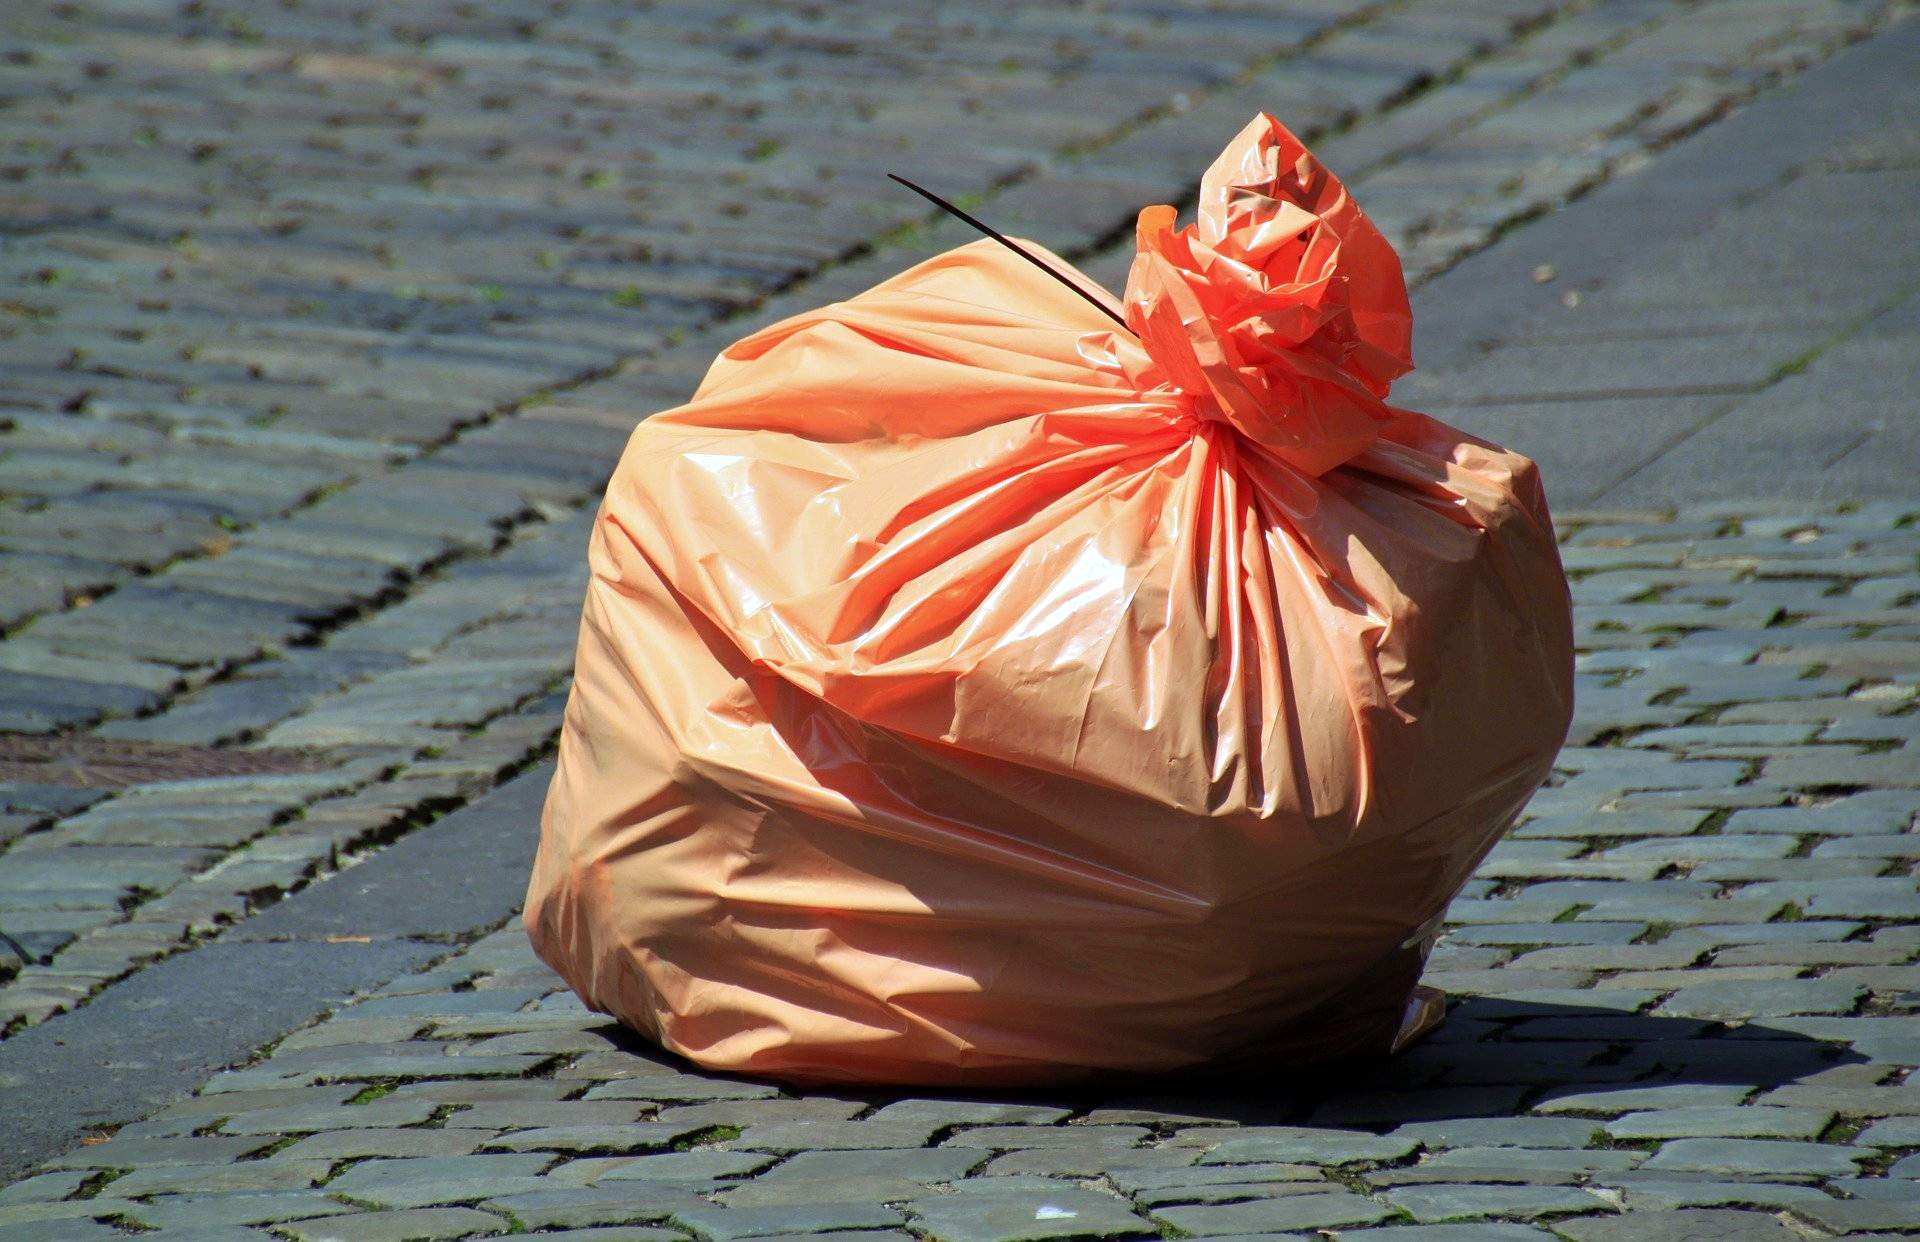 Wytyczne w sprawie postępowania z odpadami wytwarzanymi w czasie występowania zakażeń koronawirusem